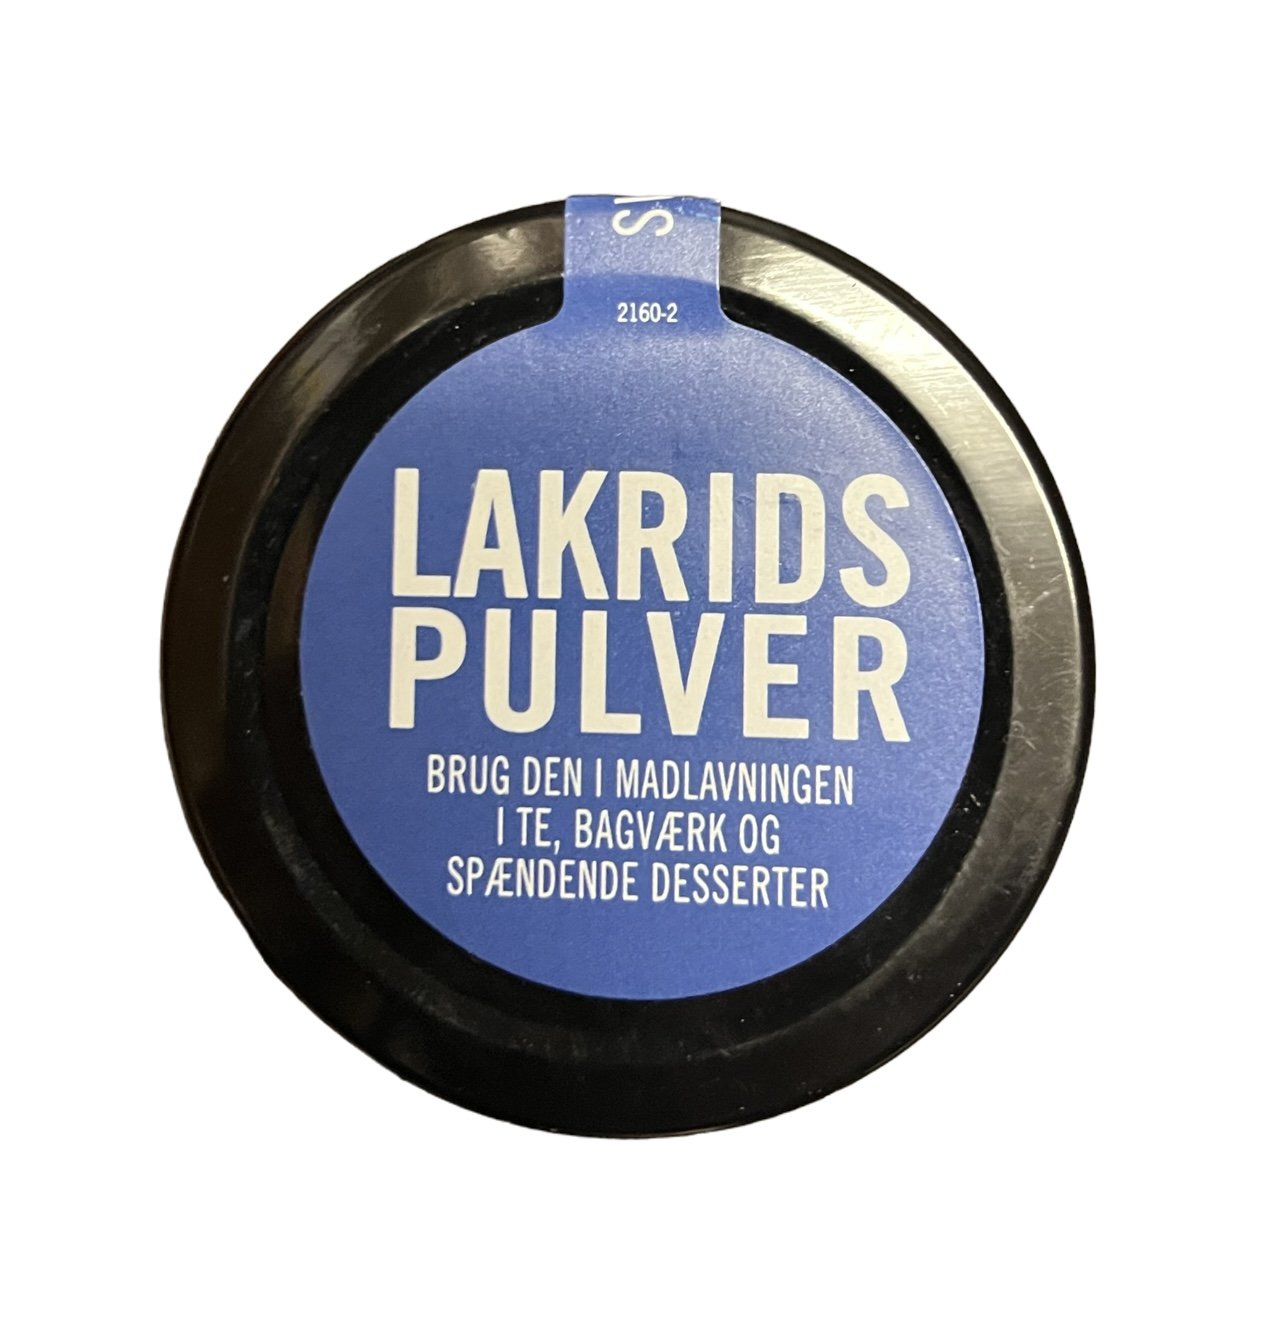 Licorice powder 35g